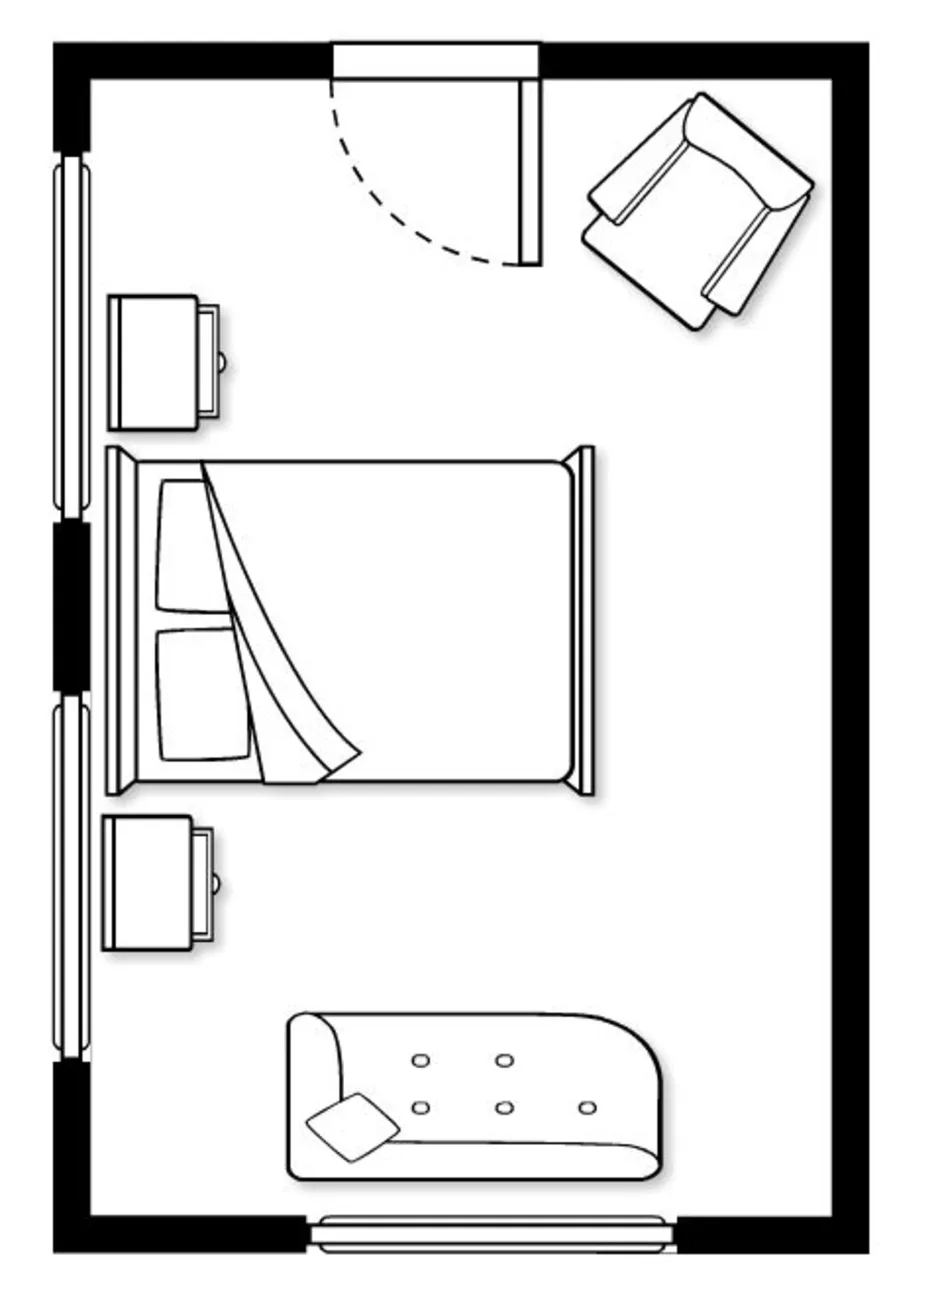 План комнаты с мебелью вид спереди